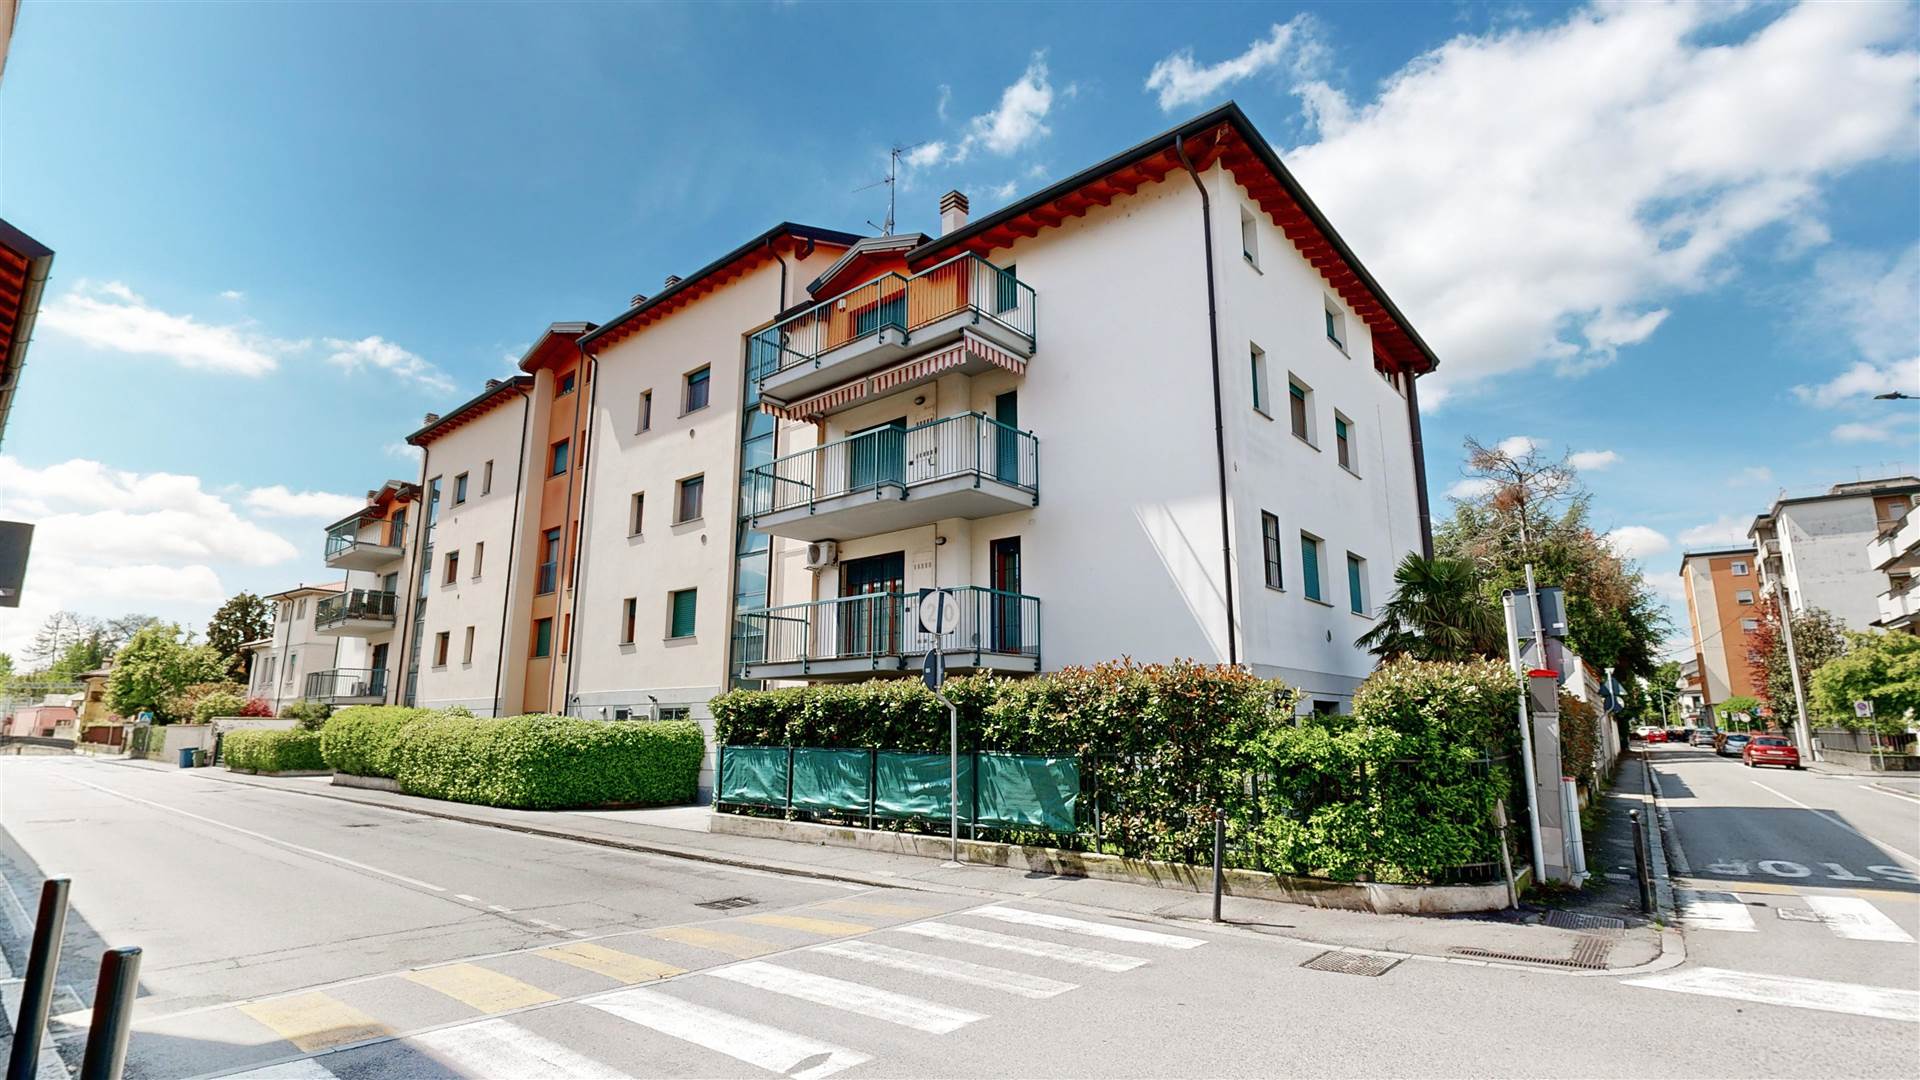 Nel cuore di Melzo, in via Gorizia, sorge un bellissimo contesto: un luminoso e spazioso appartamento duplex all'ultimo piano, che incanta con la sua 